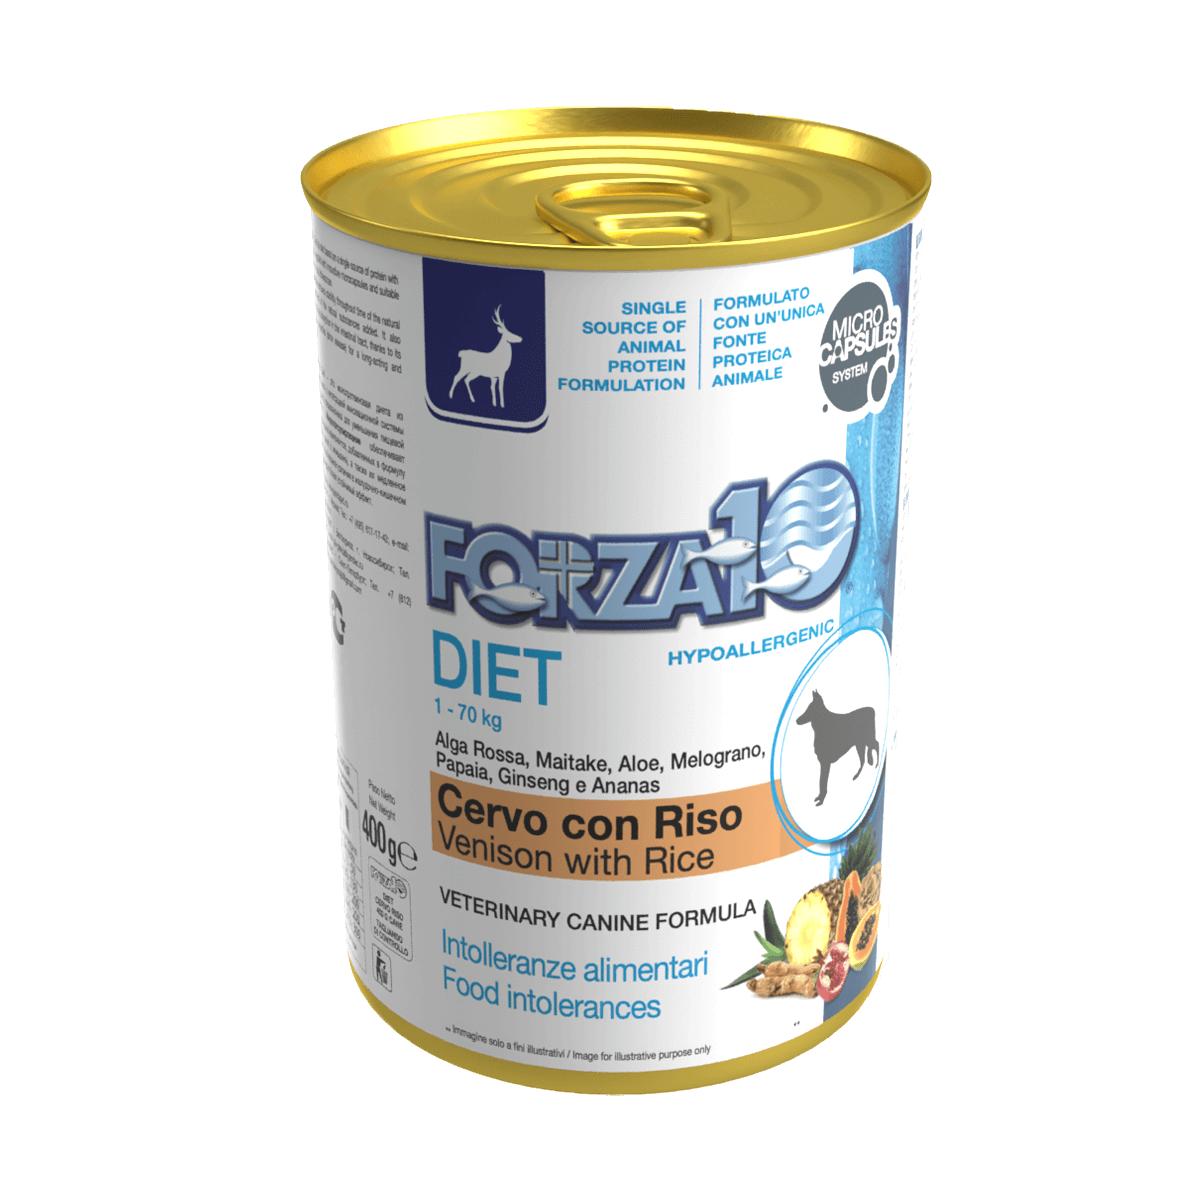 Forza10 DIET - Diētisks konservs suņiem ar brieža gaļu un rīsiem.  hipoalerģisks uzturs alerģiskiem dzīvniekiem vai dzīvniekiem ar uzturvielu nepanesību. 